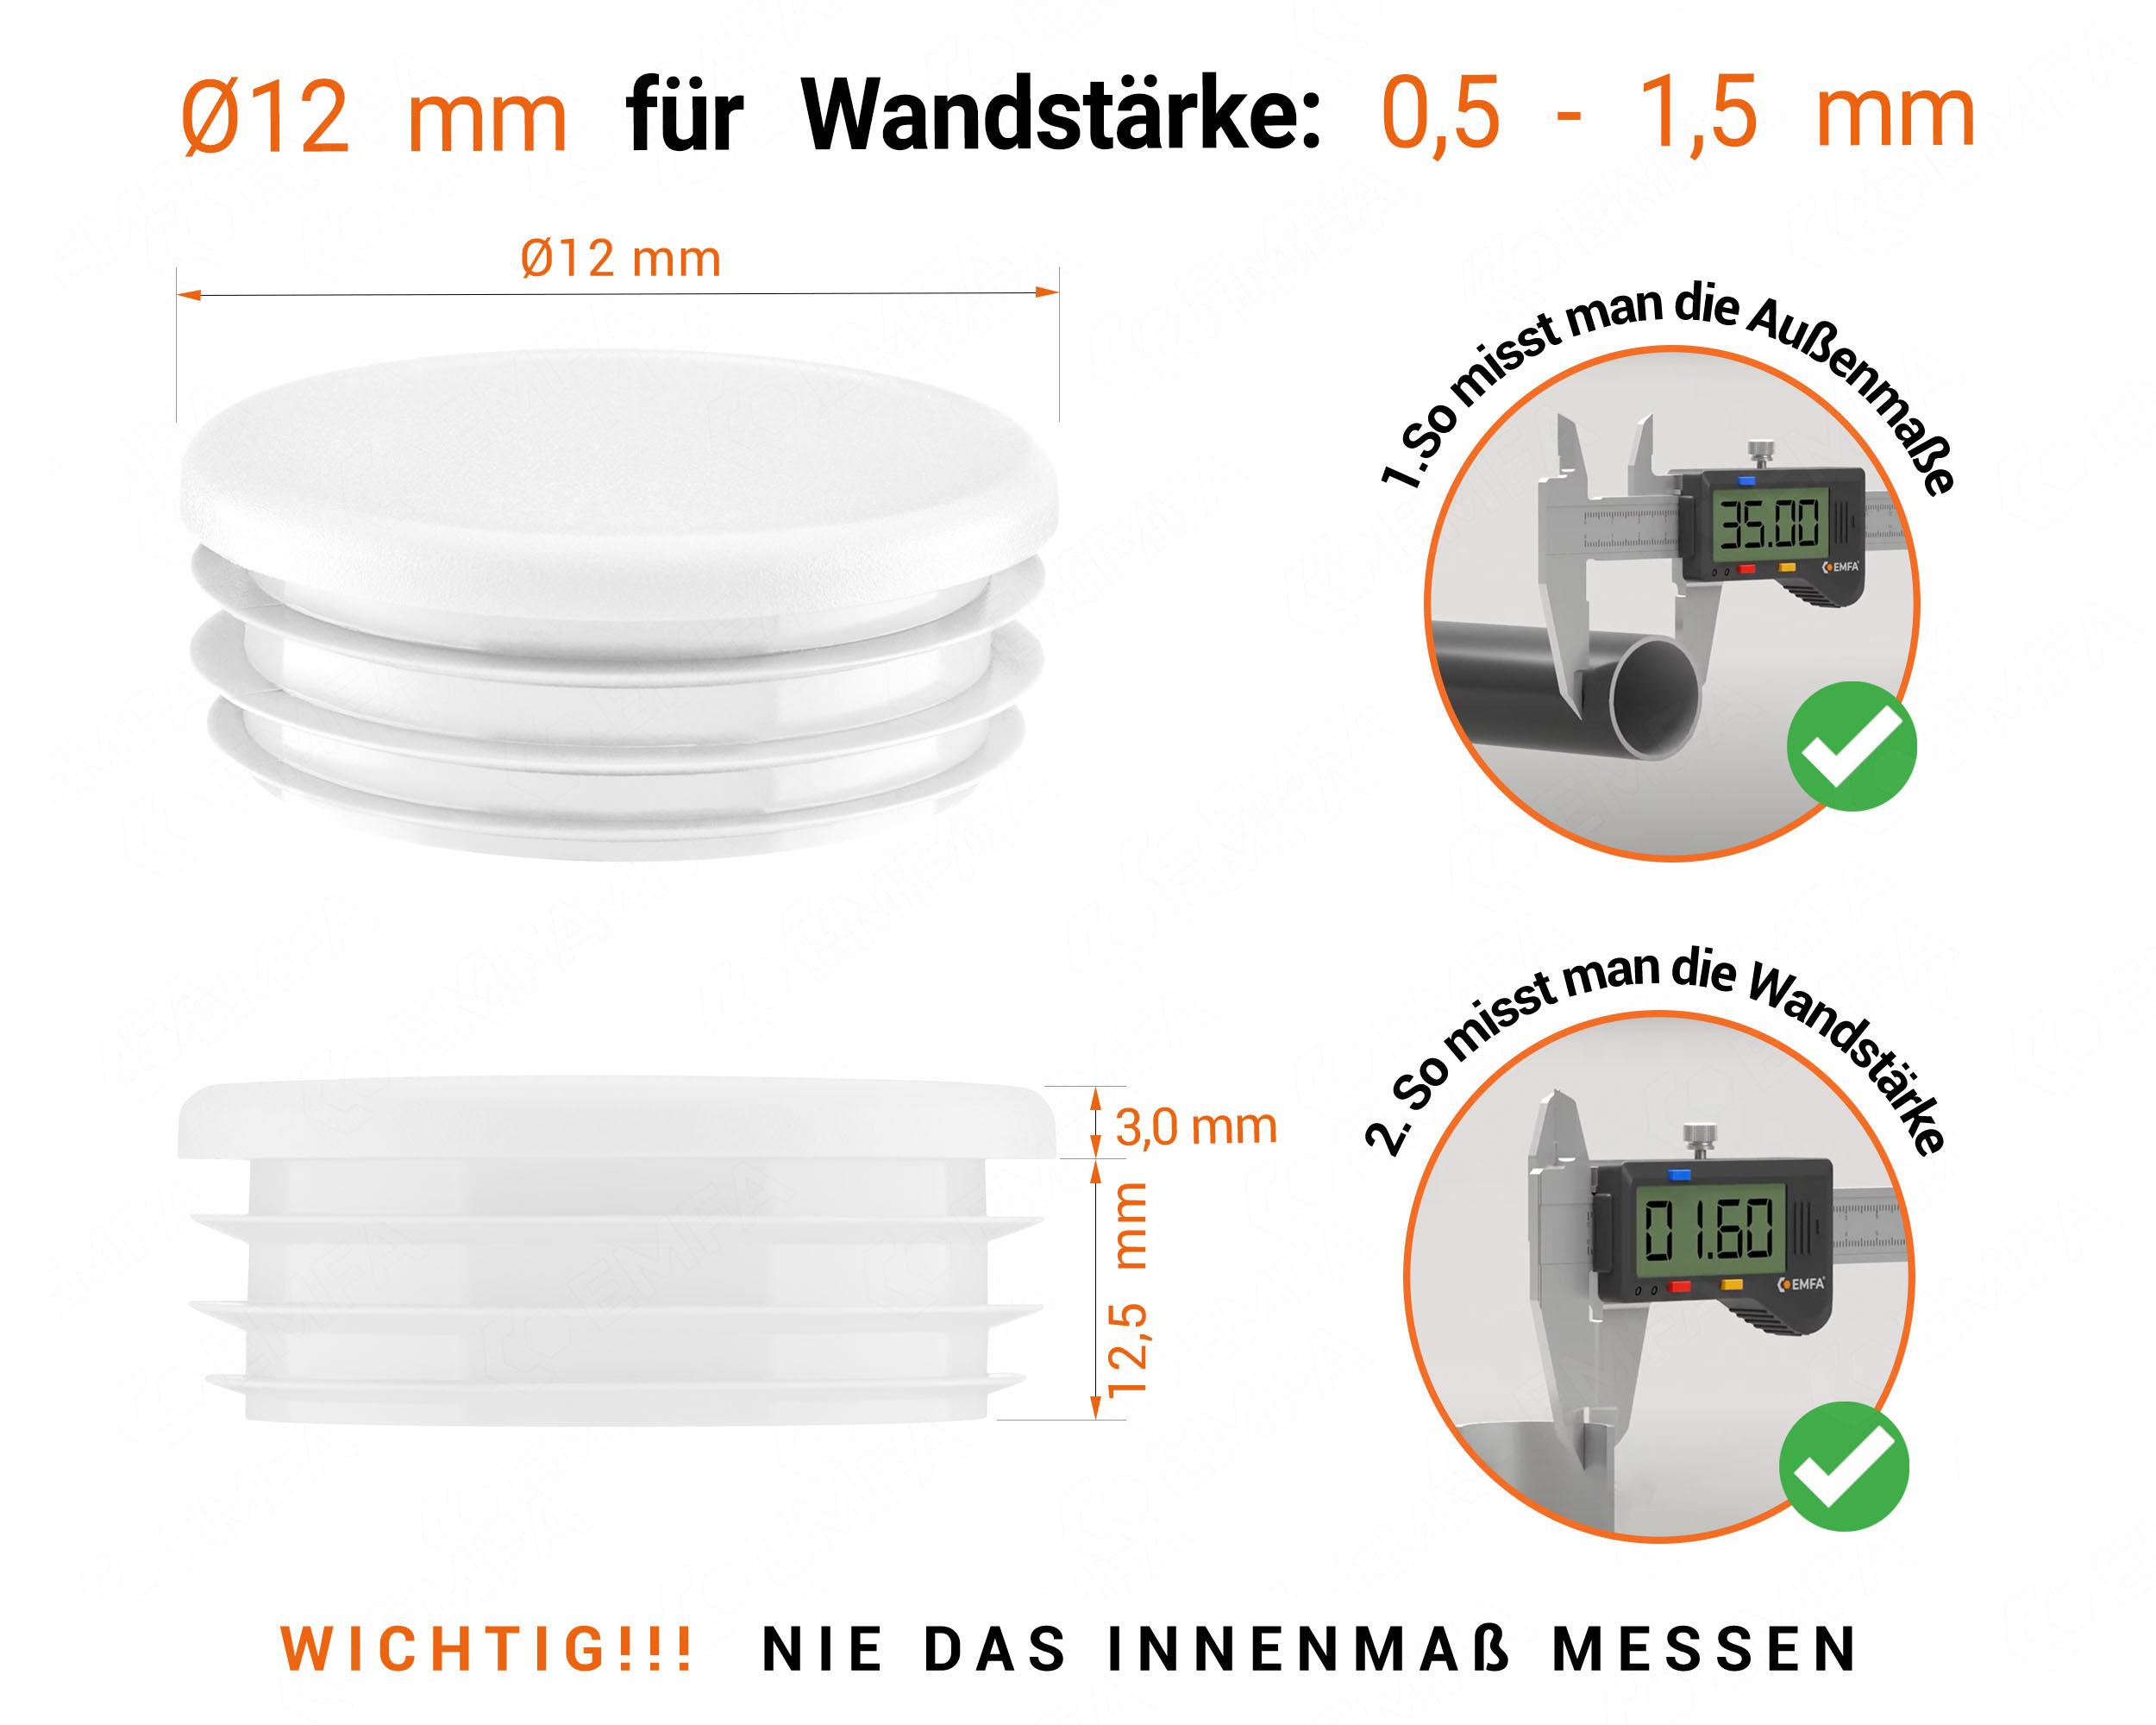 Weiße Endkappe für Rundrohre in der Größe 12 mm mit technischen Abmessungen und Anleitung für korrekte Messung